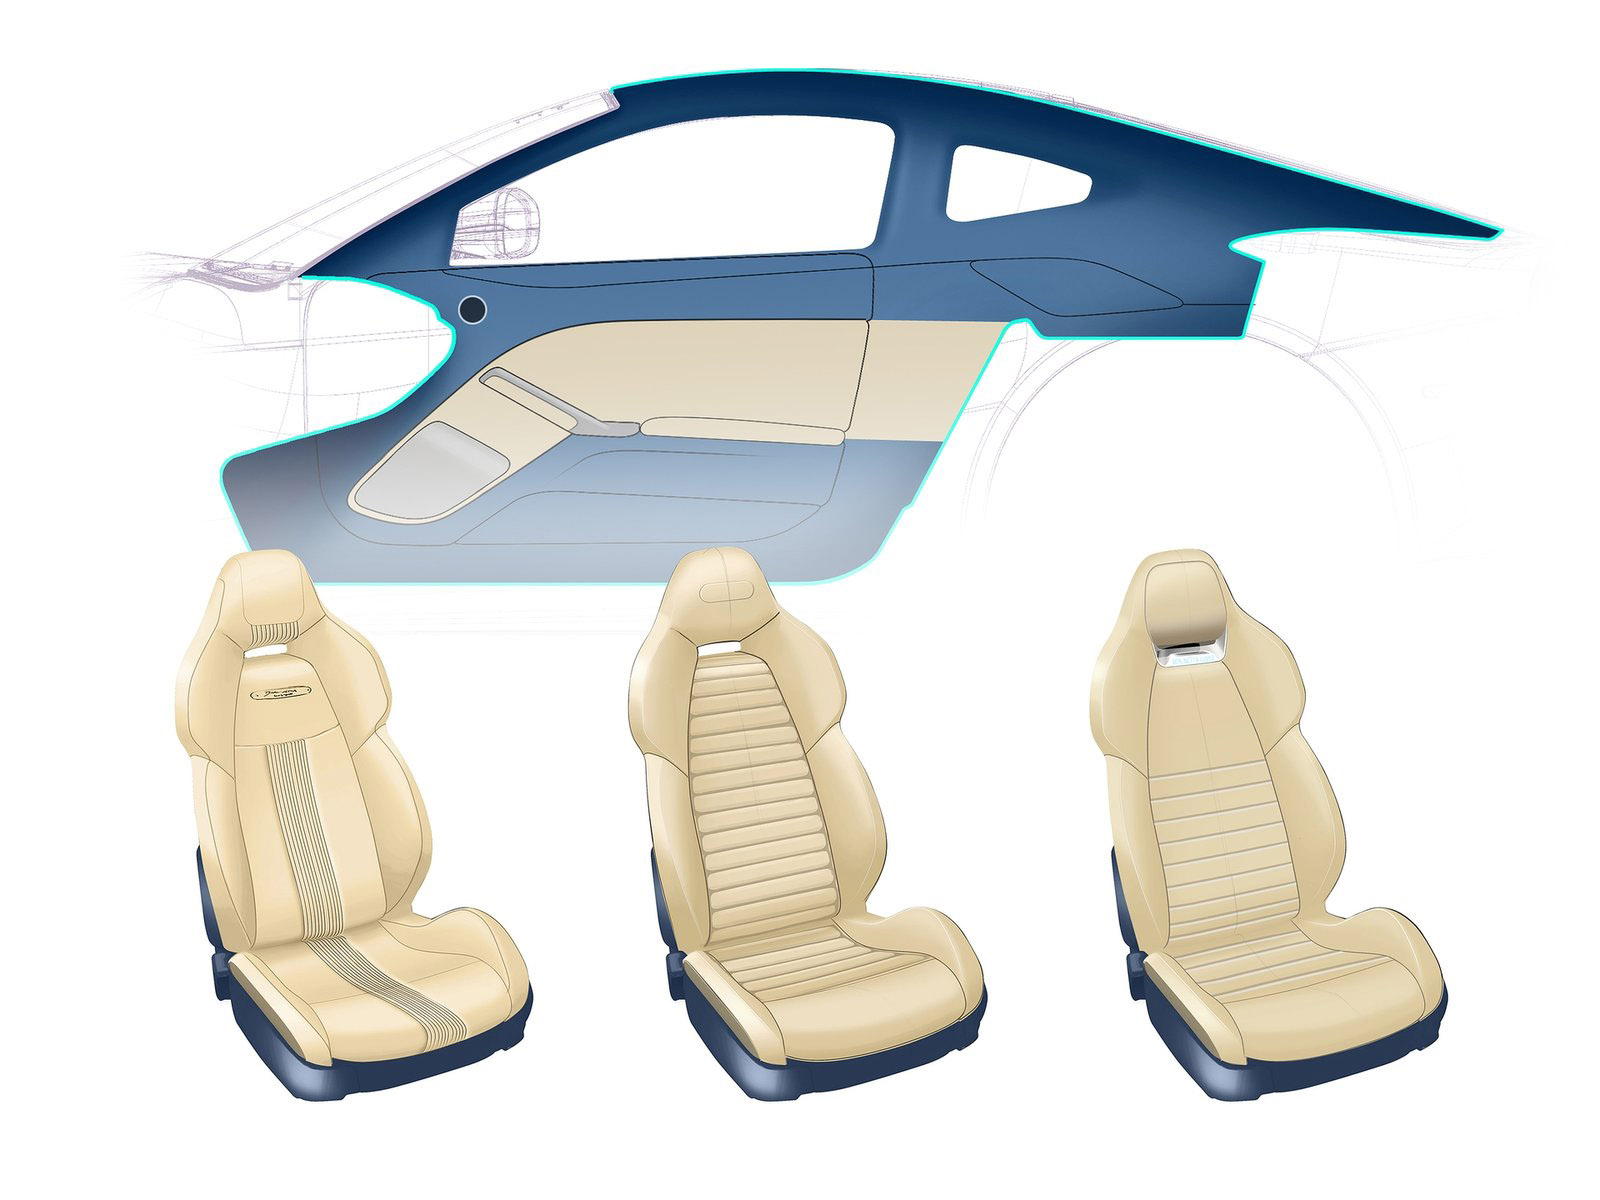 Carrozzeria Touring Superleggera Berlinetta Lusso, 2015 - Interior Design Sketch